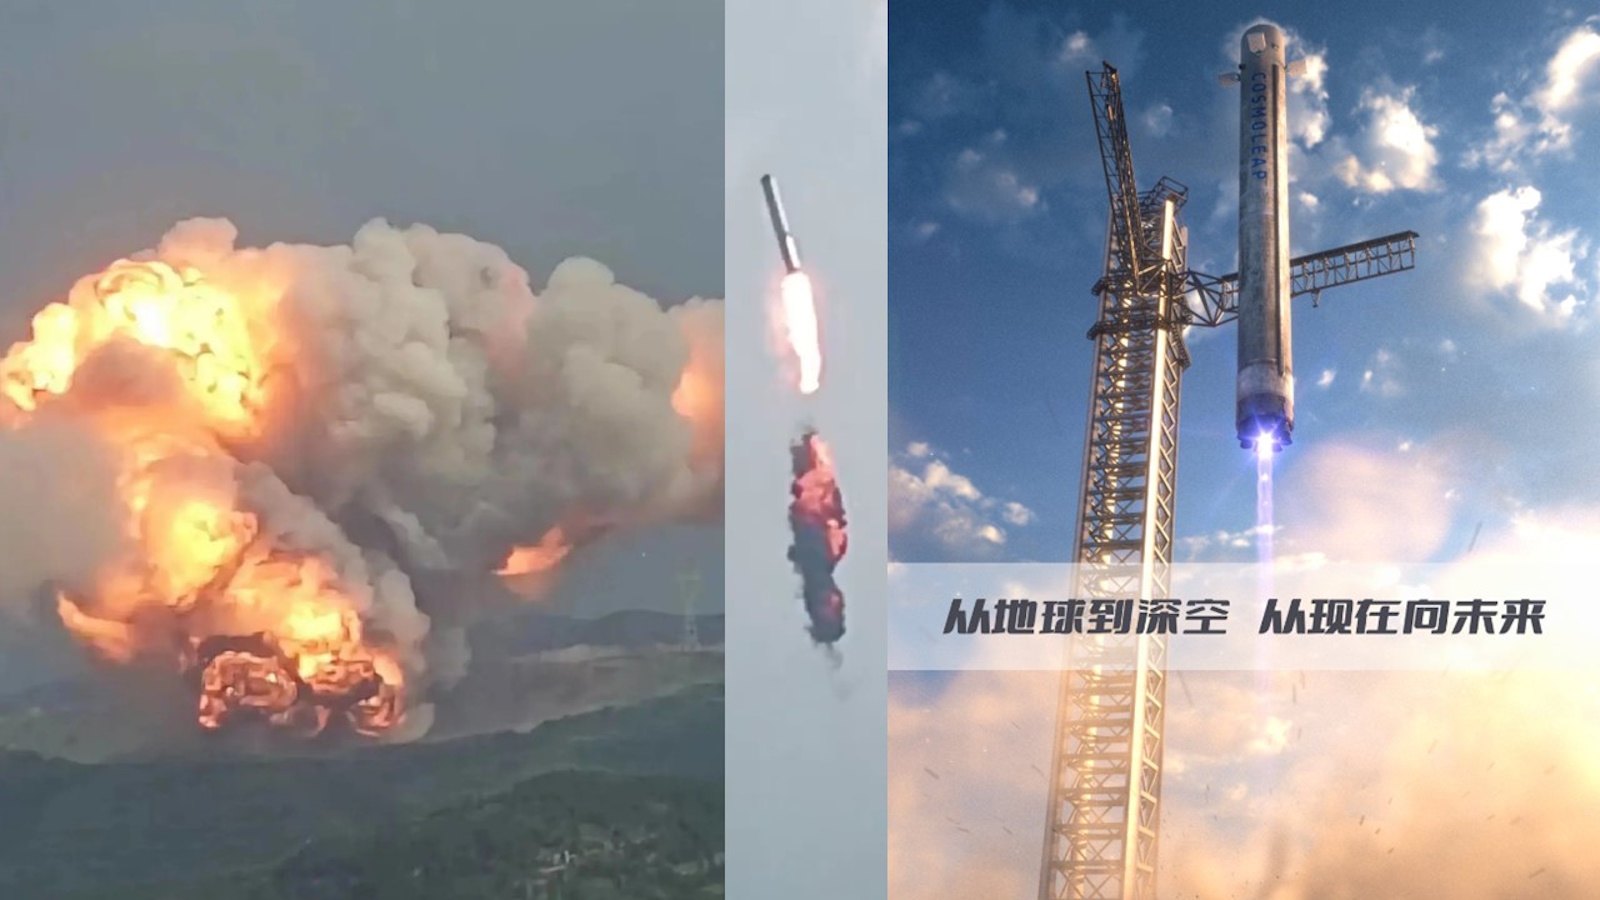 En quelques jours, un booster de fusée chinoise privée explose accidentellement à proximité d'une ville et le secteur spatial privé chinois se permet les rêves les plus fous. © Weibo, Cosmoleap